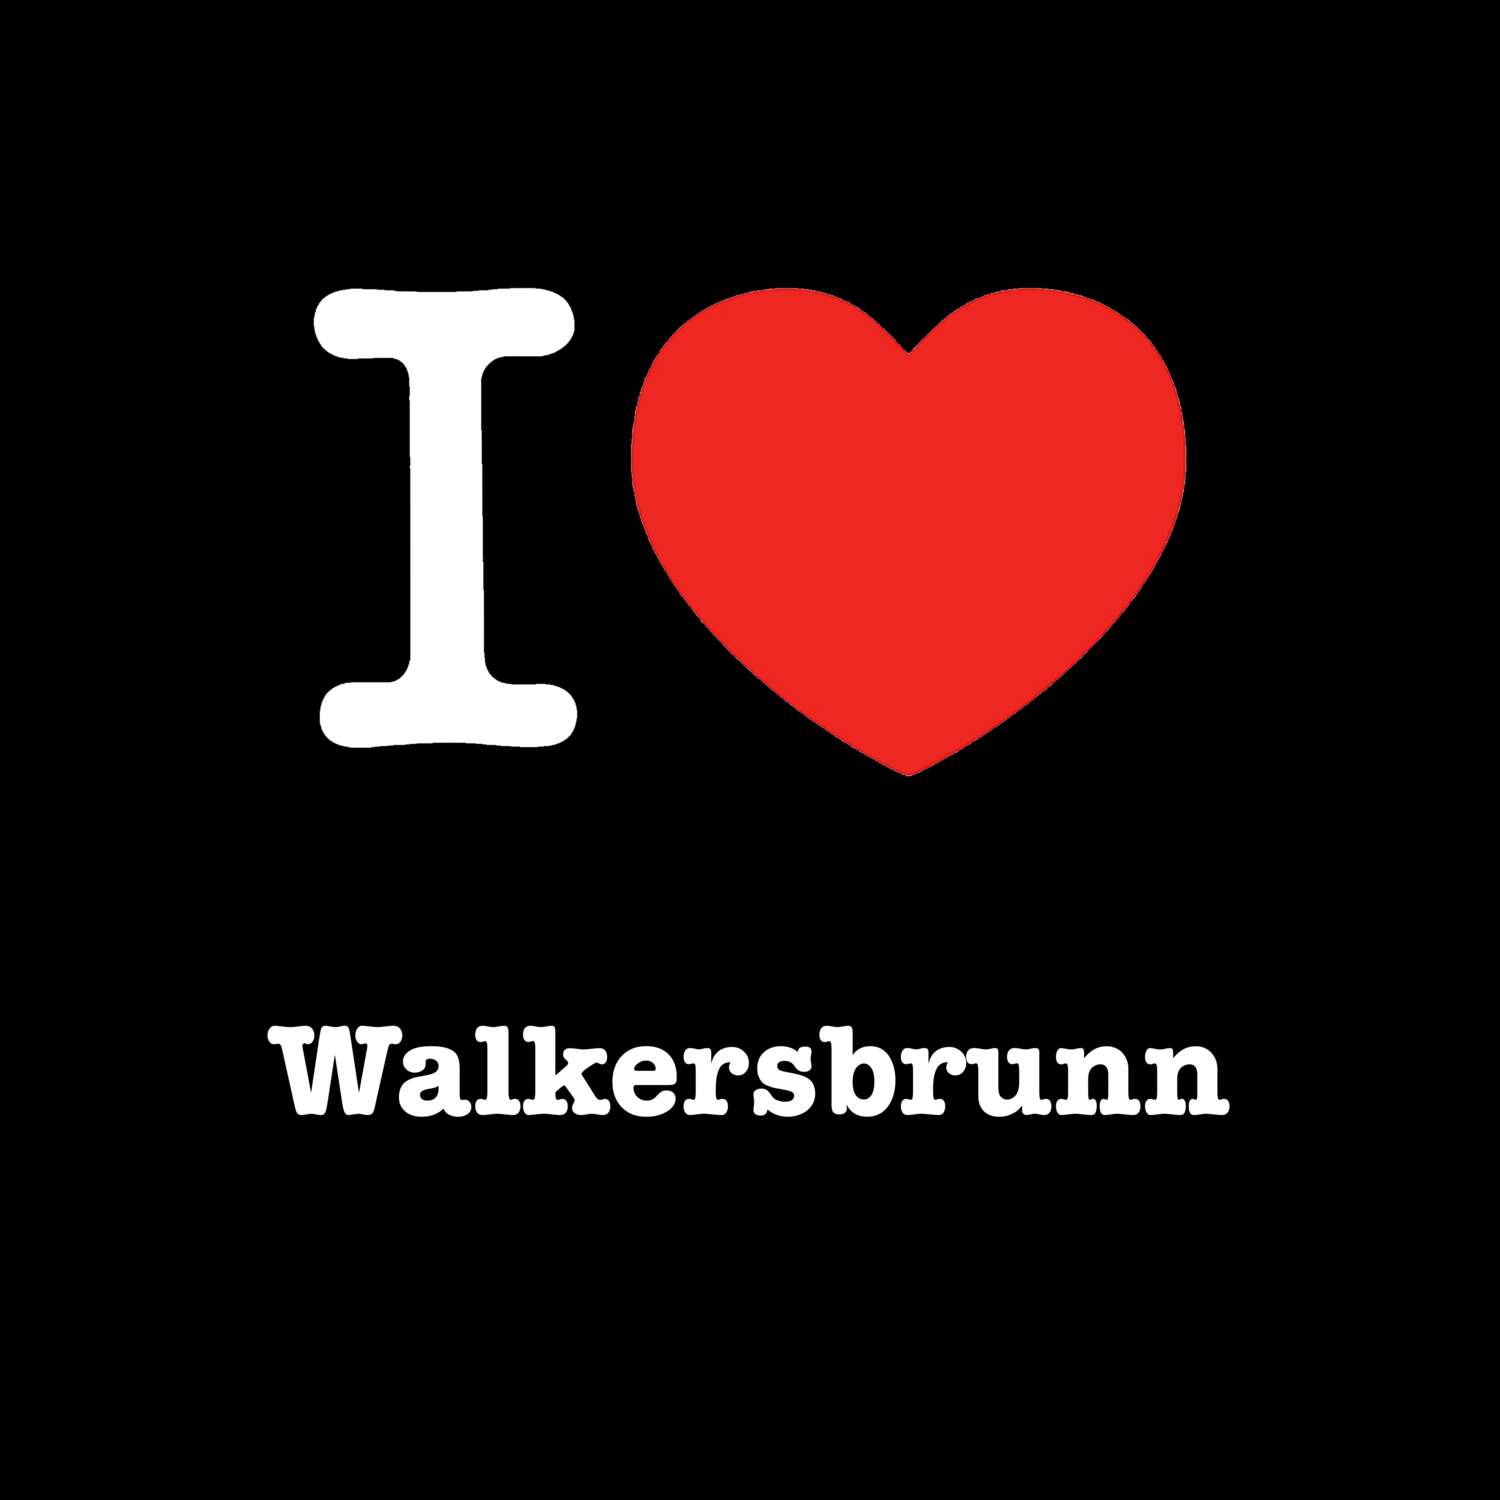 Walkersbrunn T-Shirt »I love«